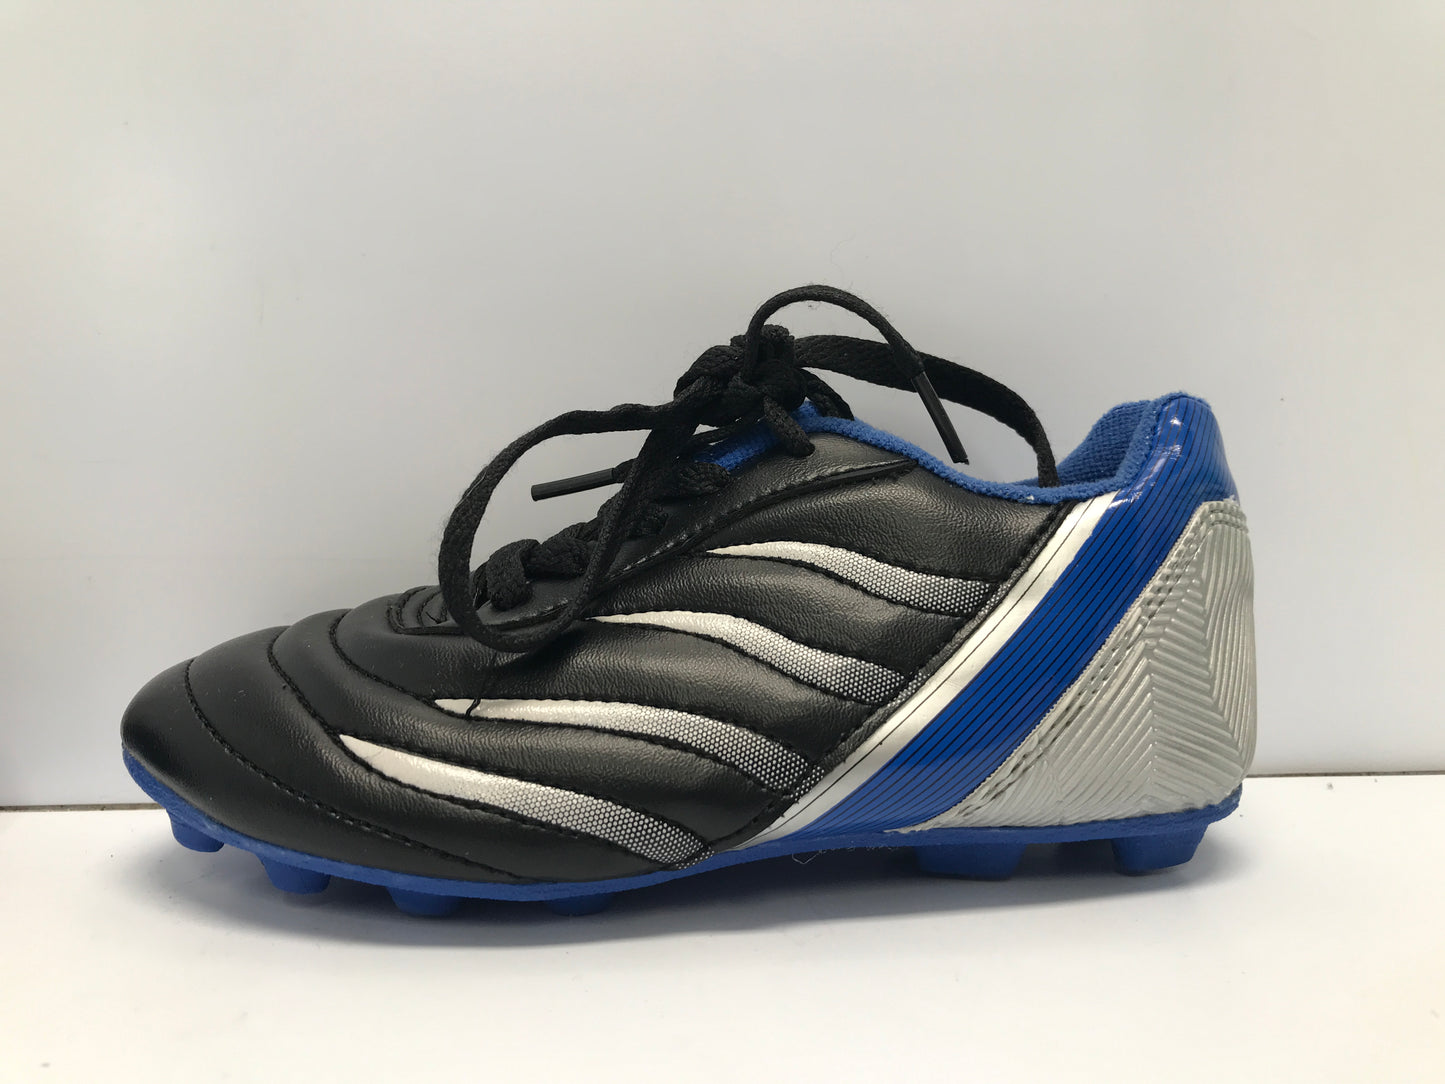 Soccer Shoes Cleats Child Size 12 Blue Black Excellent